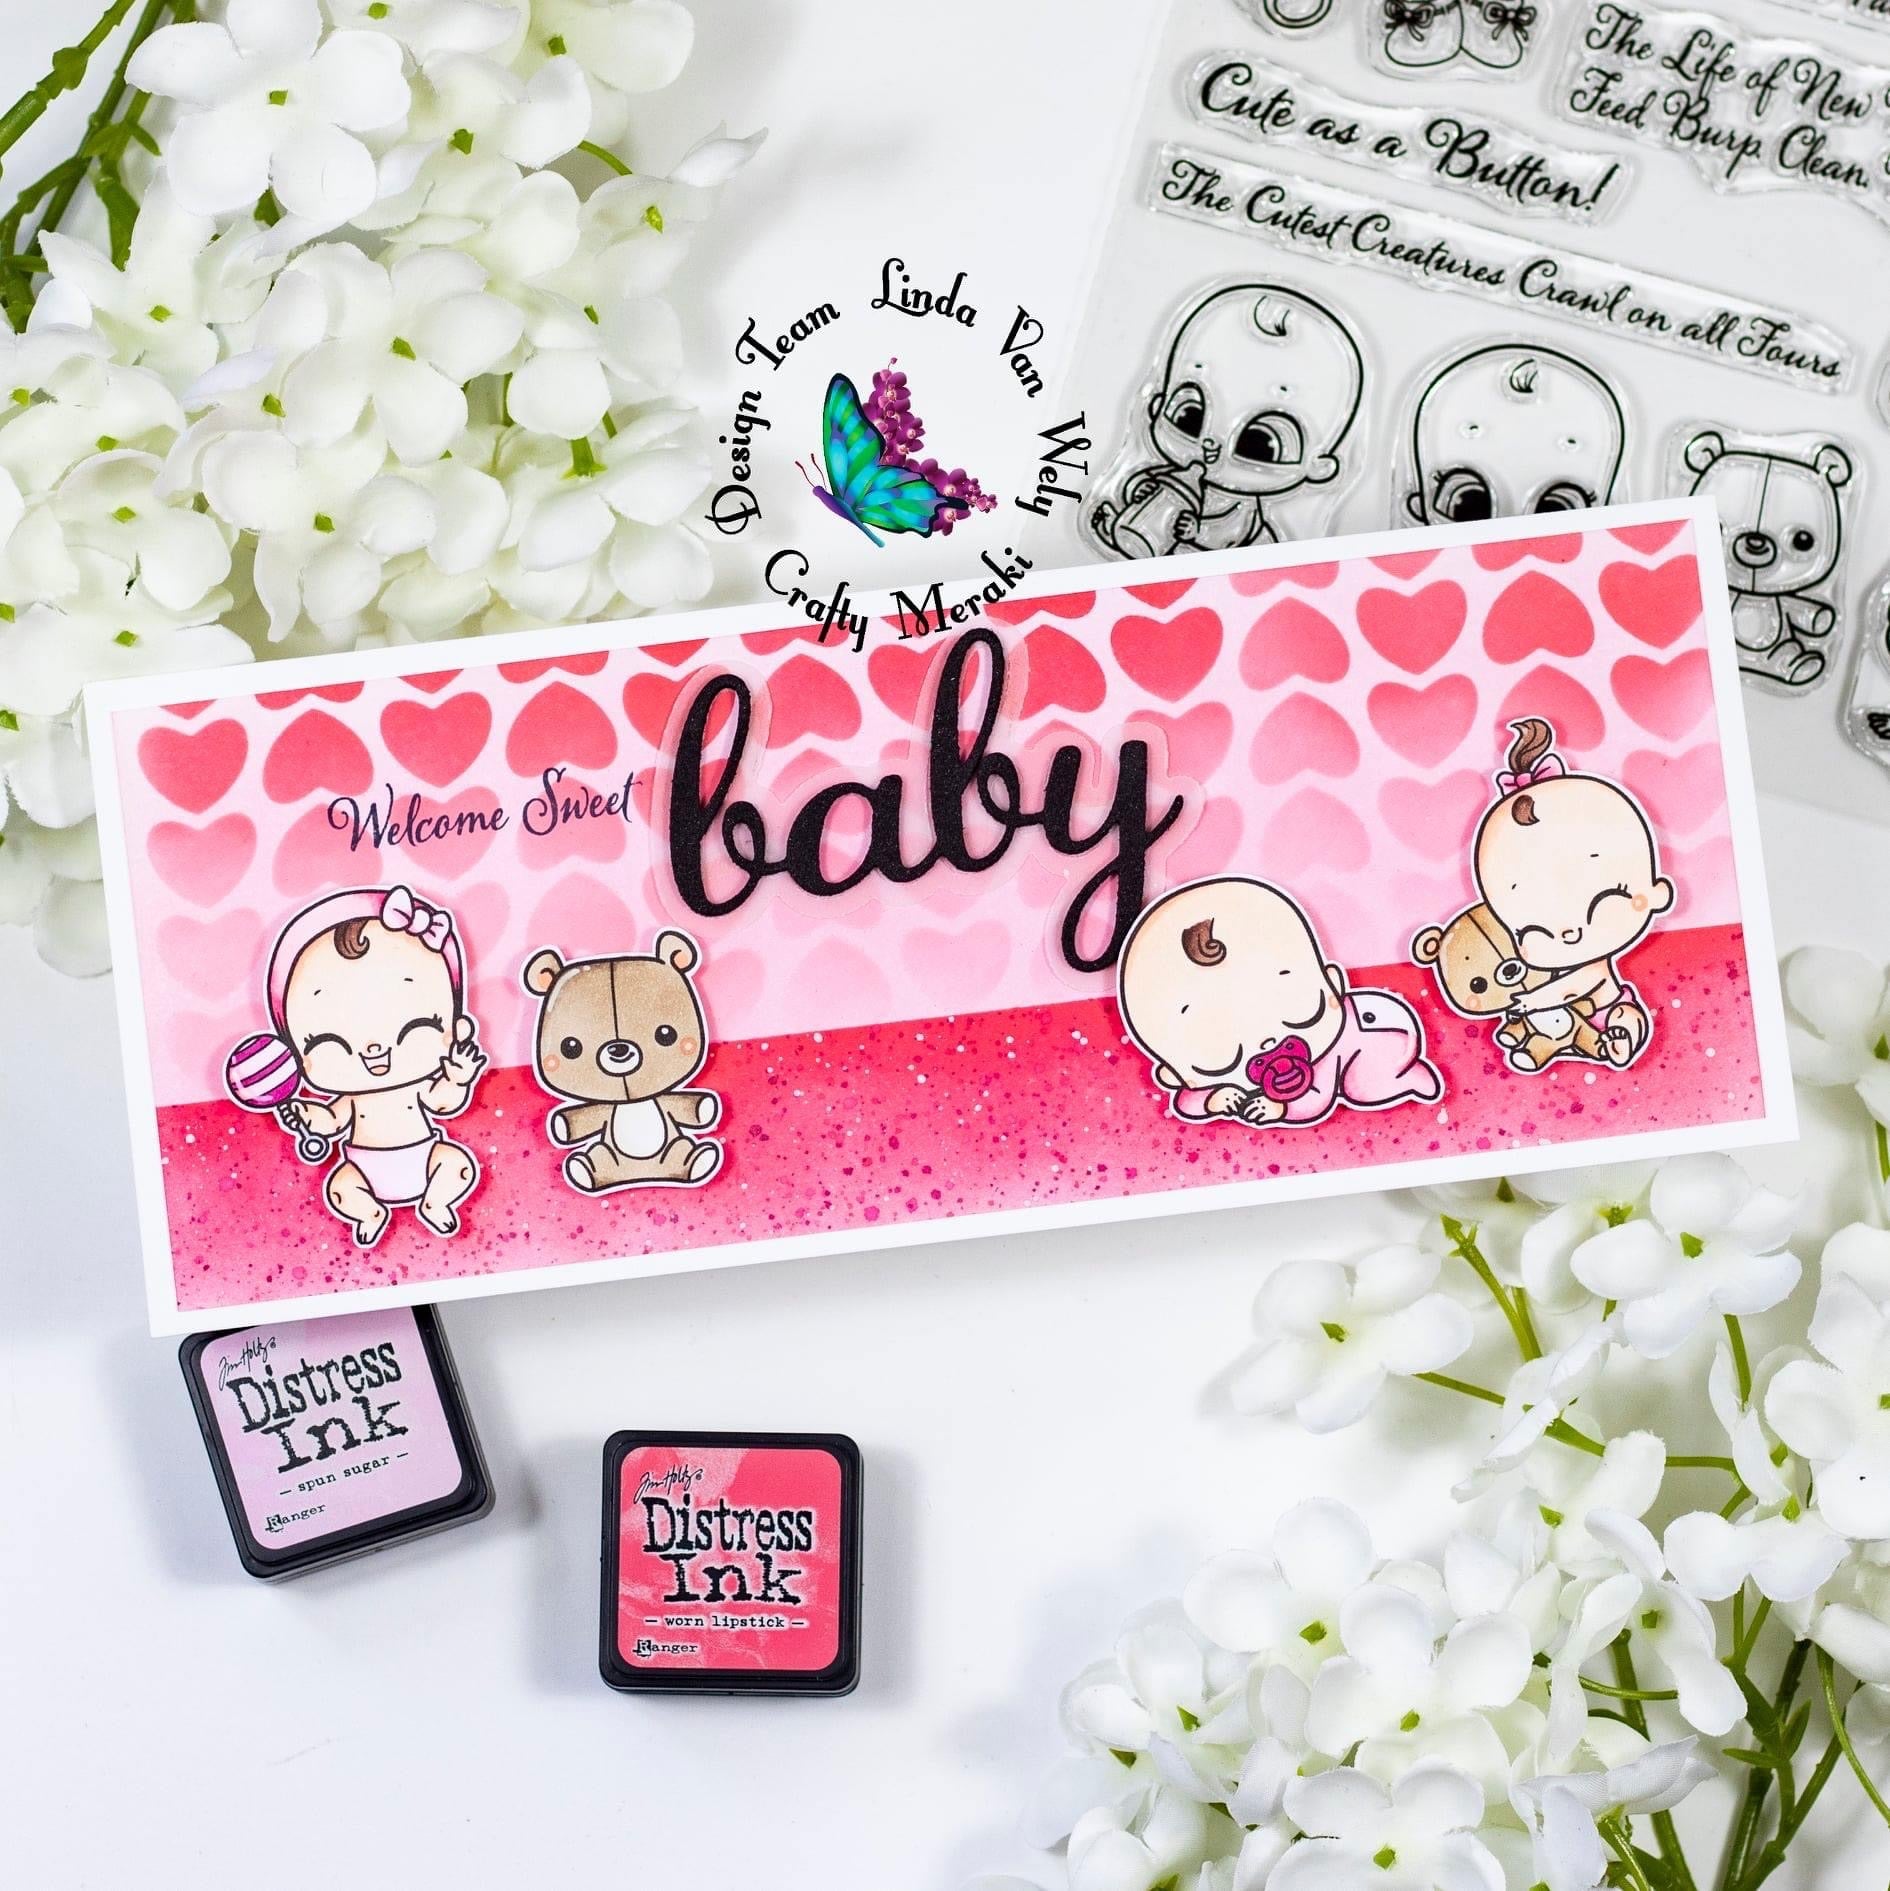 Crafty Meraki Oh Baby Stamp set - Crafty Meraki